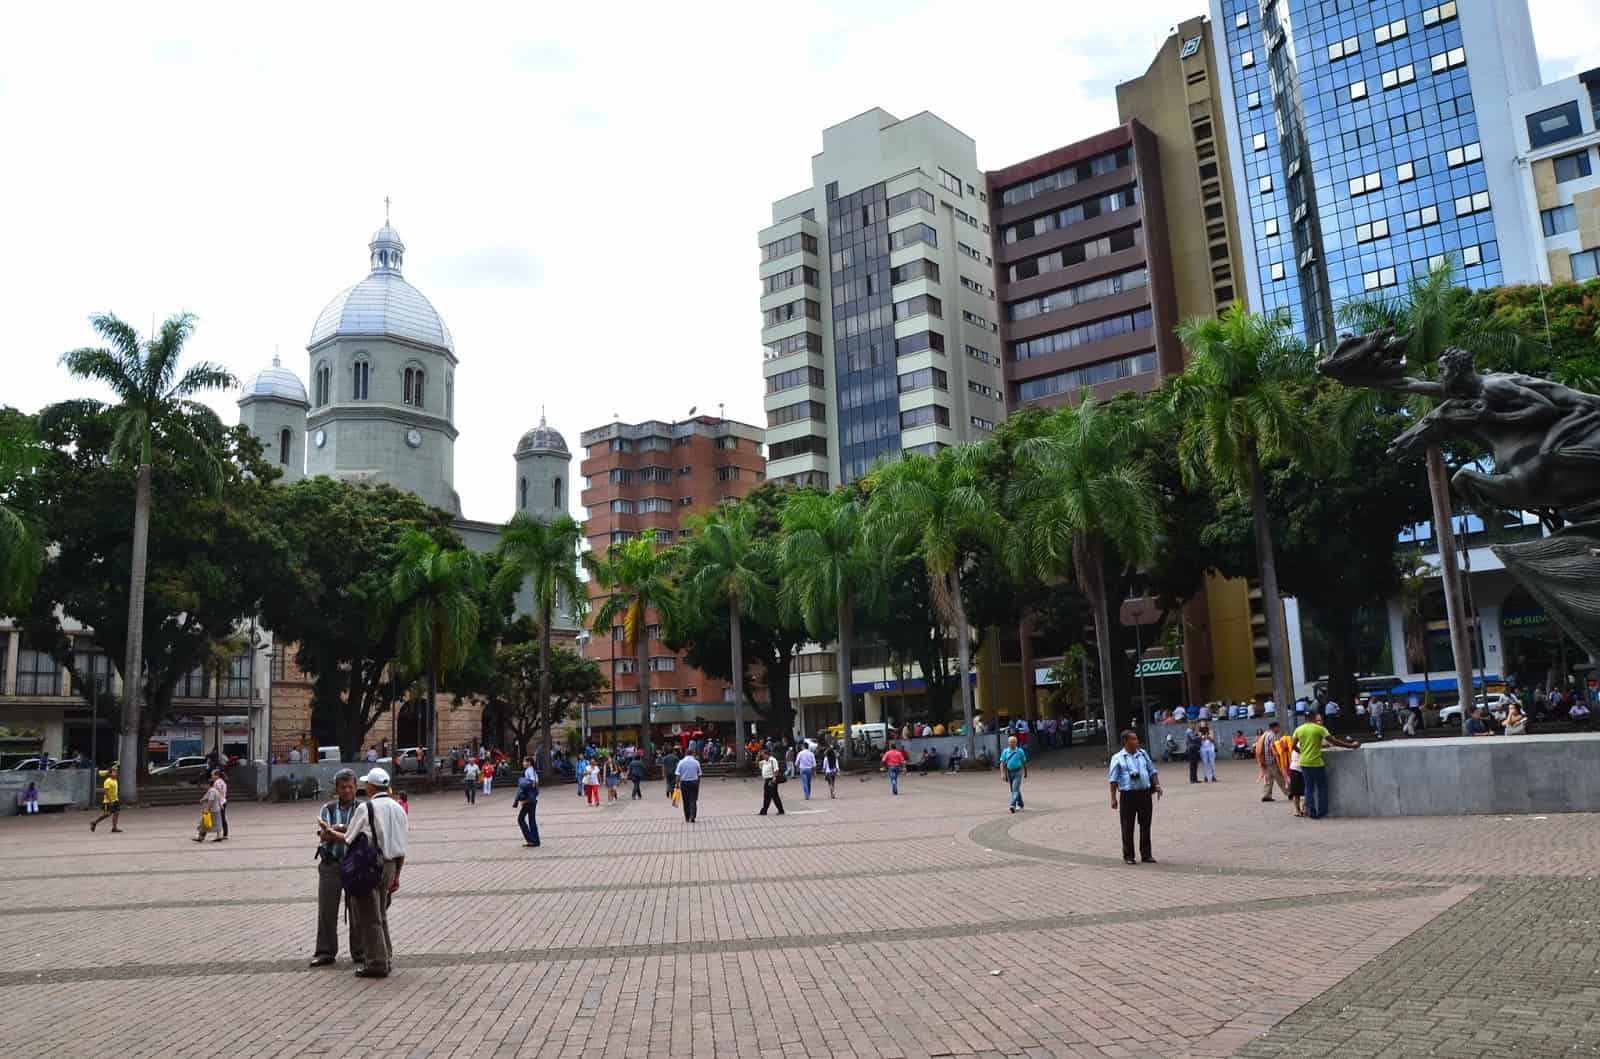 Plaza de Bolívar in Pereira, Risaralda, Colombia